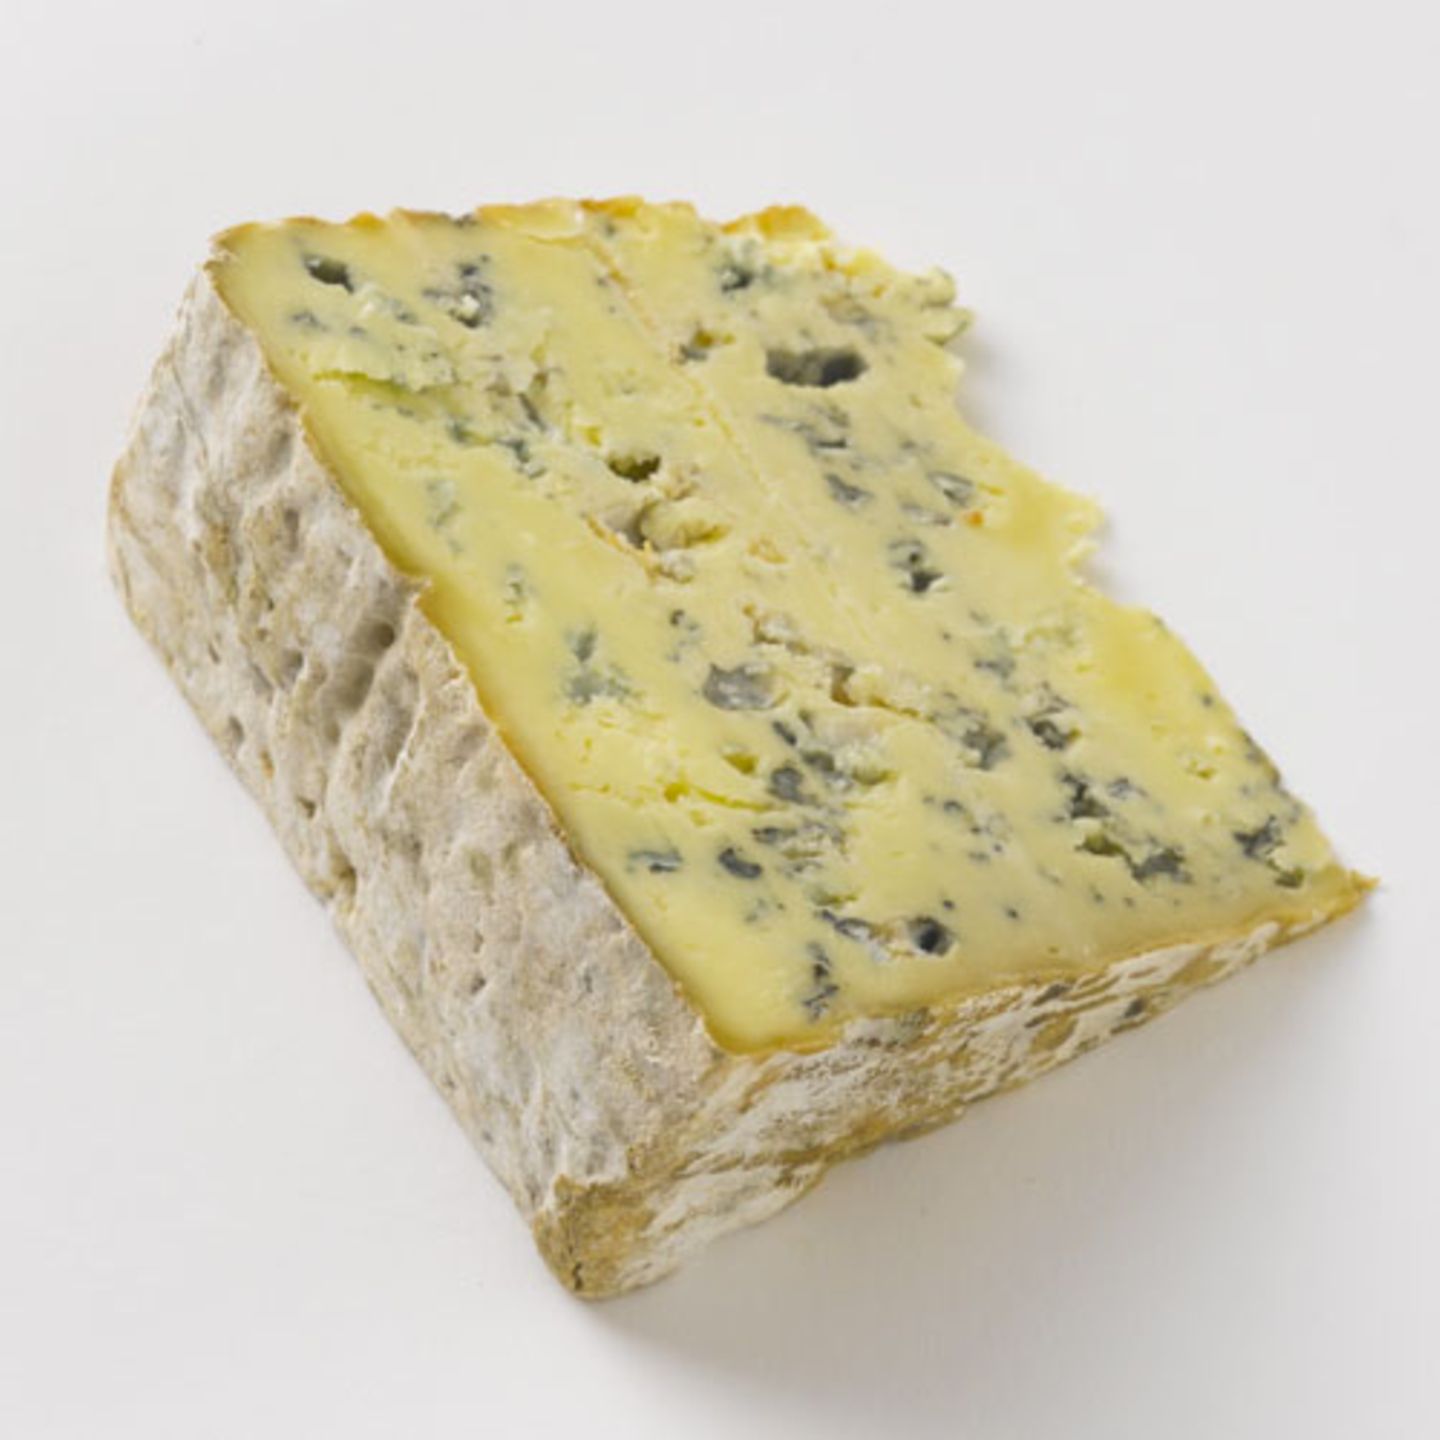 Ein Blauschimmelkäse ist perfekt zur Kürbiskonfitüre. Zum Beispiel Bleu d'Auvergne aus dem Herzen Frankreichs, der noch nach alter Tradition und aus bester Kuh-Rohmilch hergestellt wird. Alternativen sind Roquefort oder Stilton.